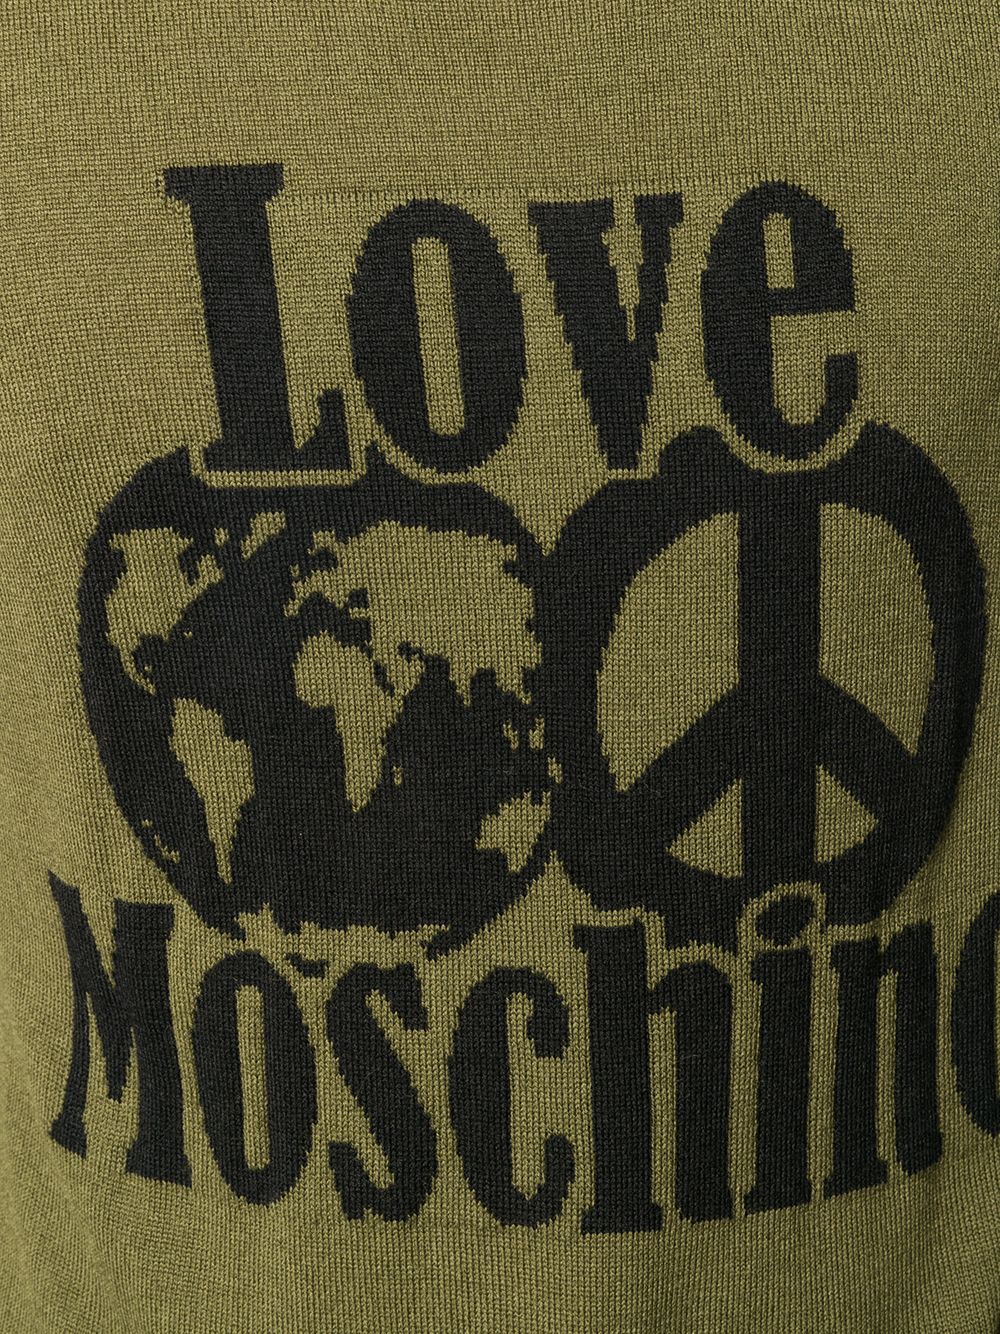 фото Love moschino джемпер вязки интарсия с логотипом